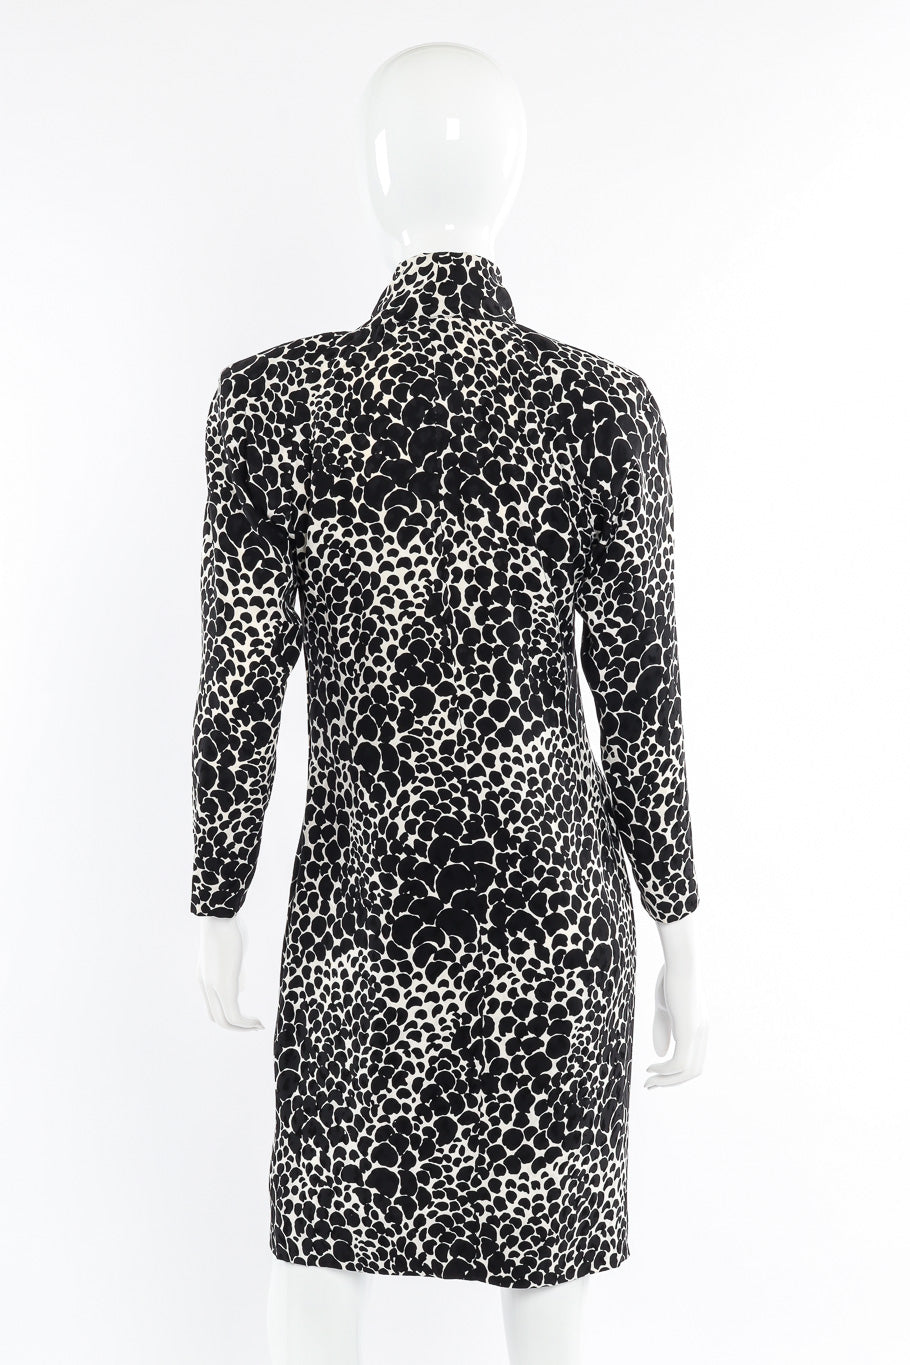 Vintage Saint Laurent Petal Print Silk Dress back view on mannequin closeup @Recessla